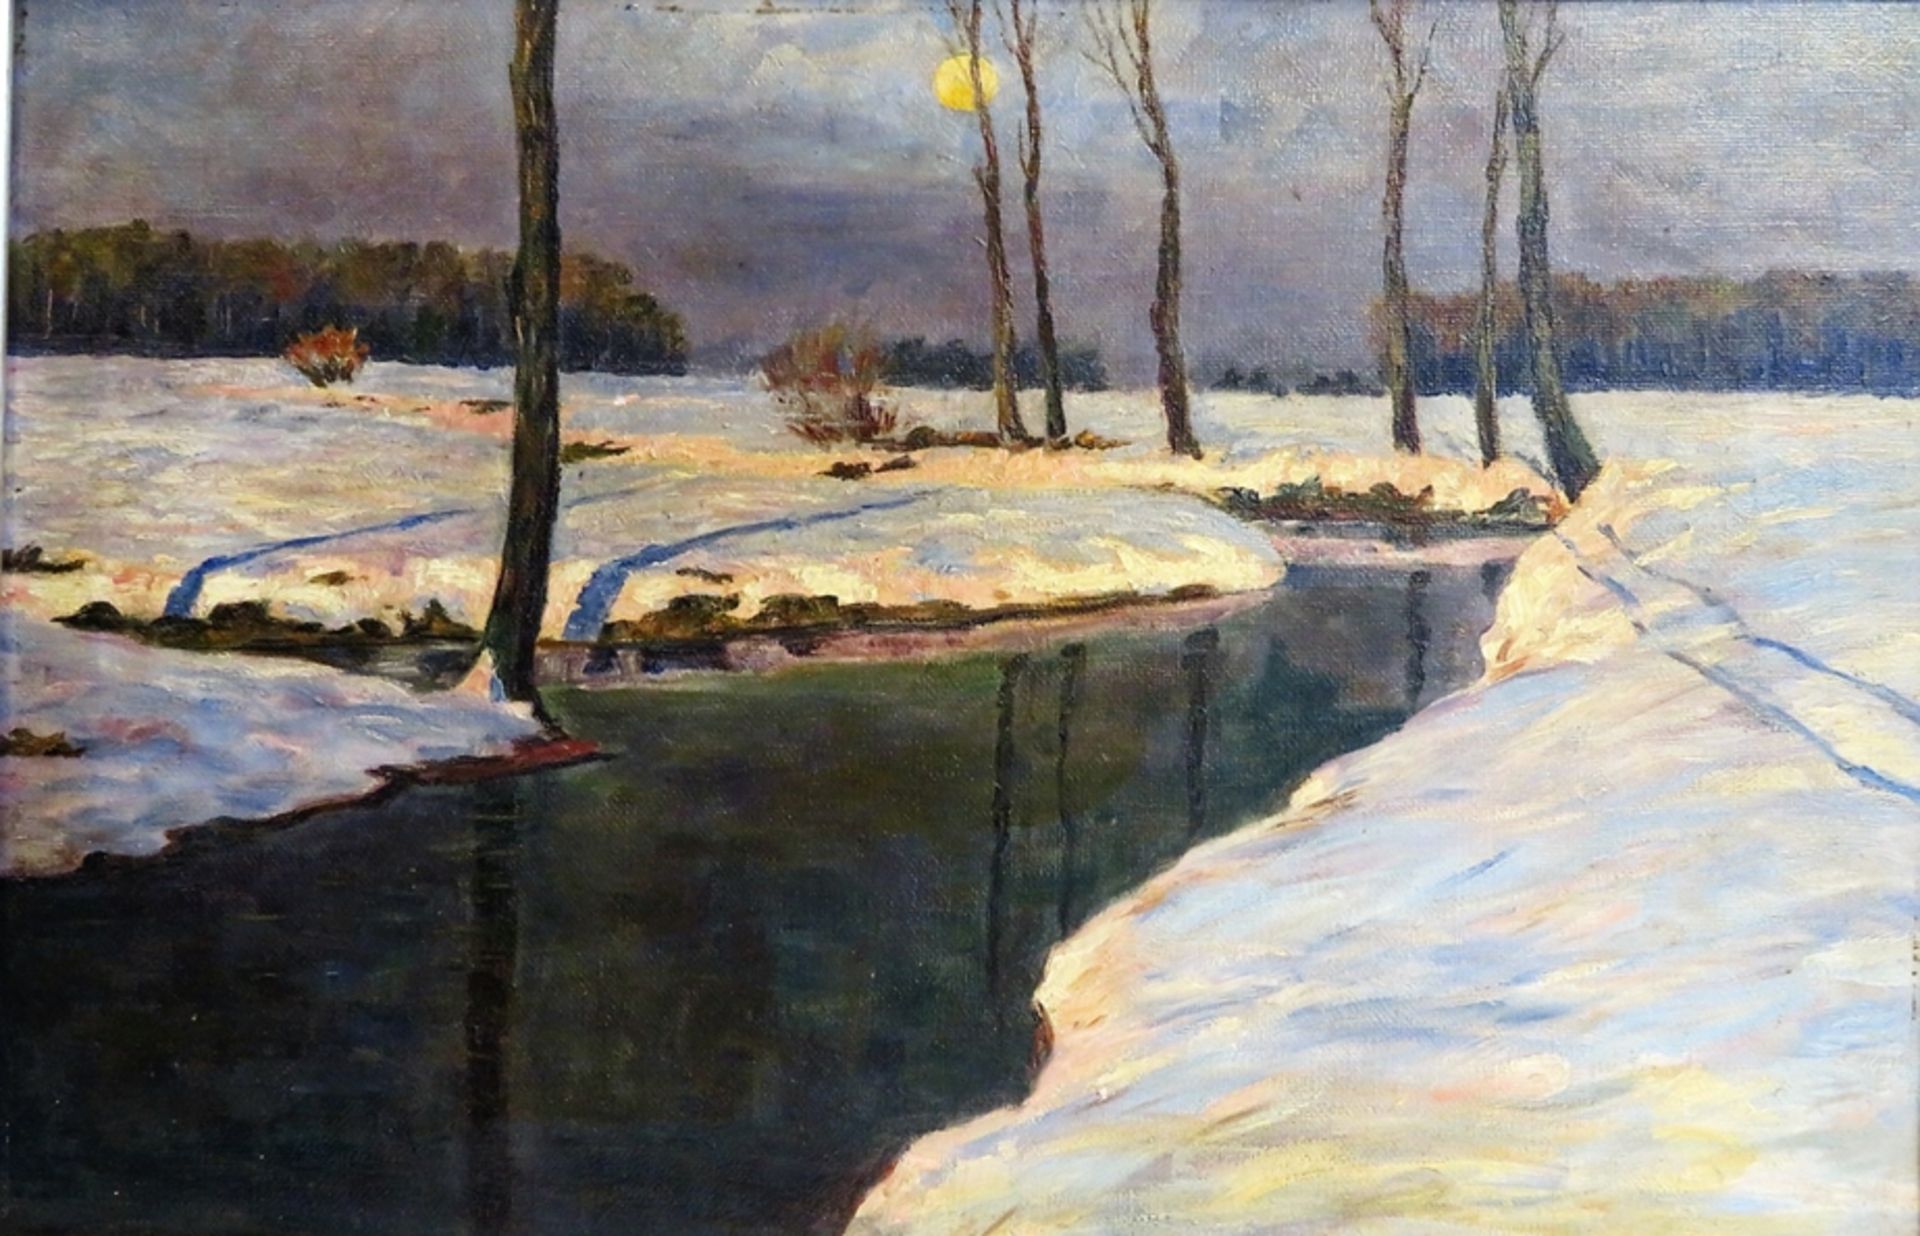 Kendziora, A., Maler um 1900, "Winterlicher Flusslauf bei Mondschein", verso sign., Öl/Leinwand, 38